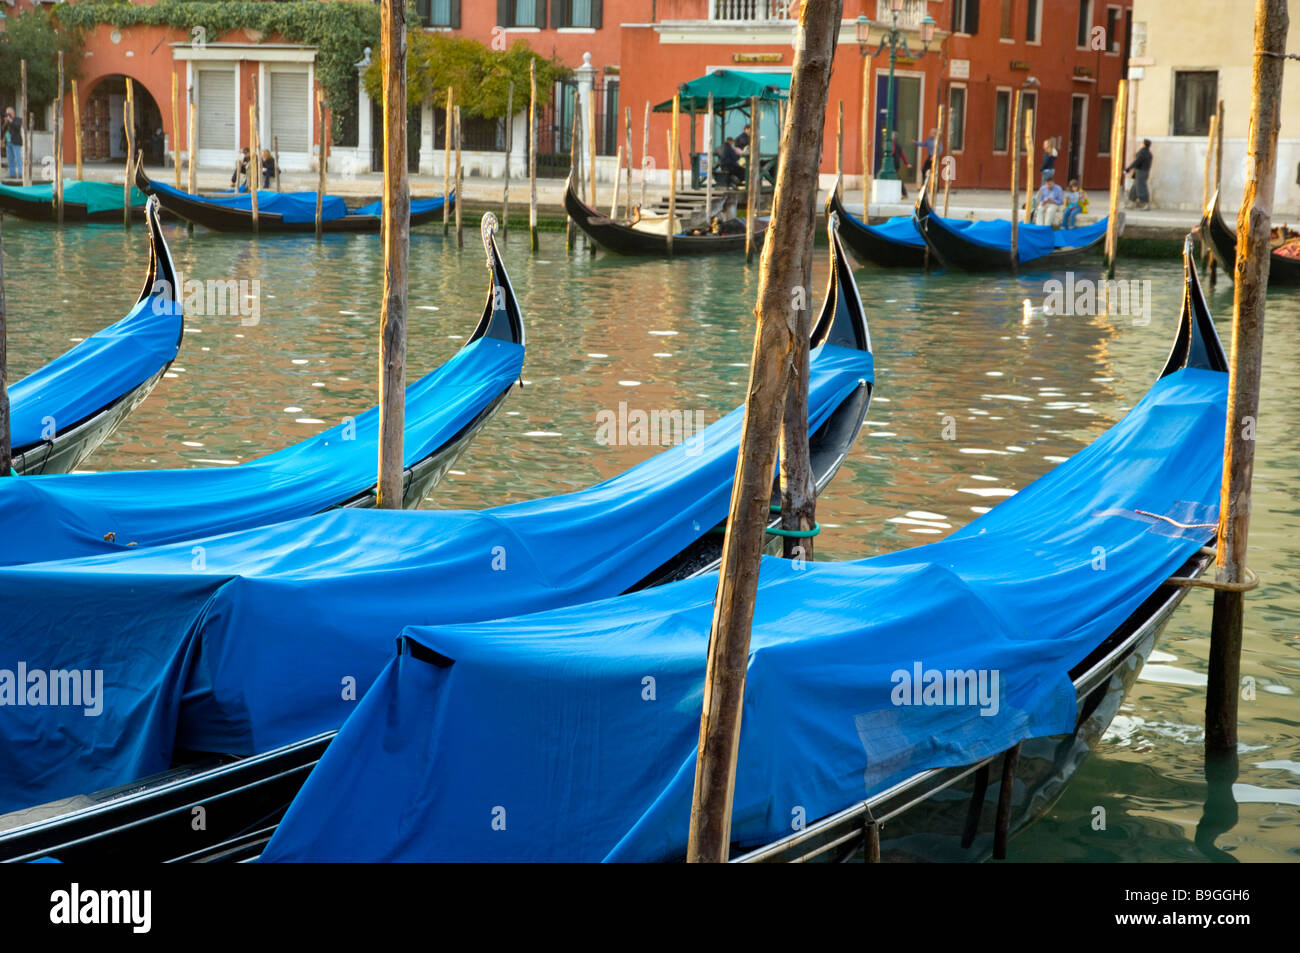 Le Grand Canal de Venise Italie avec architecture vénitienne bateaux et gondoles Banque D'Images